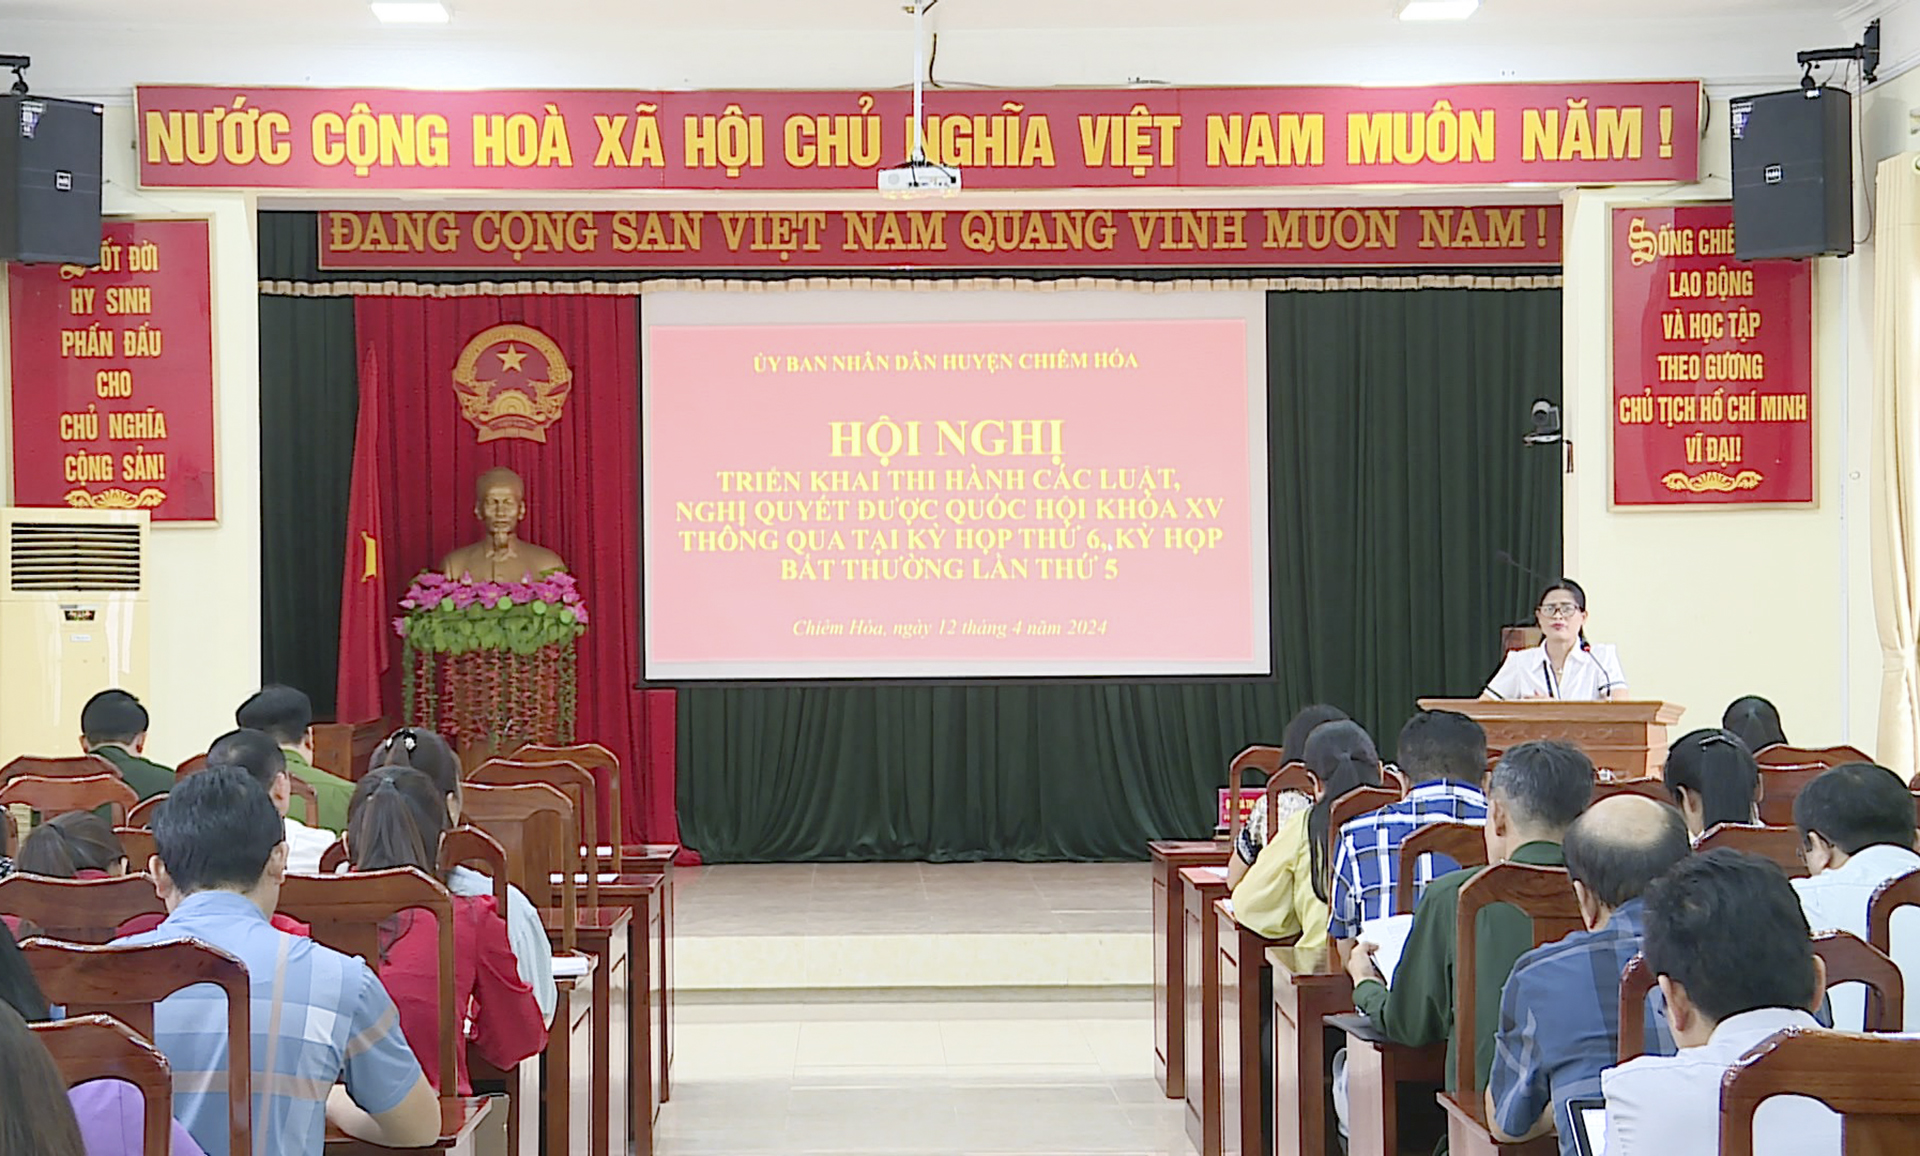 Ủy ban nhân dân huyện Chiêm Hóa tổ chức Hội nghị triển khai thi hành các Luật, Nghị quyết được Quốc hội khóa XV thông qua tại Kỳ họp thứ 5, Kỳ họp thứ 6, Kỳ họp bất thường lần thứ 5